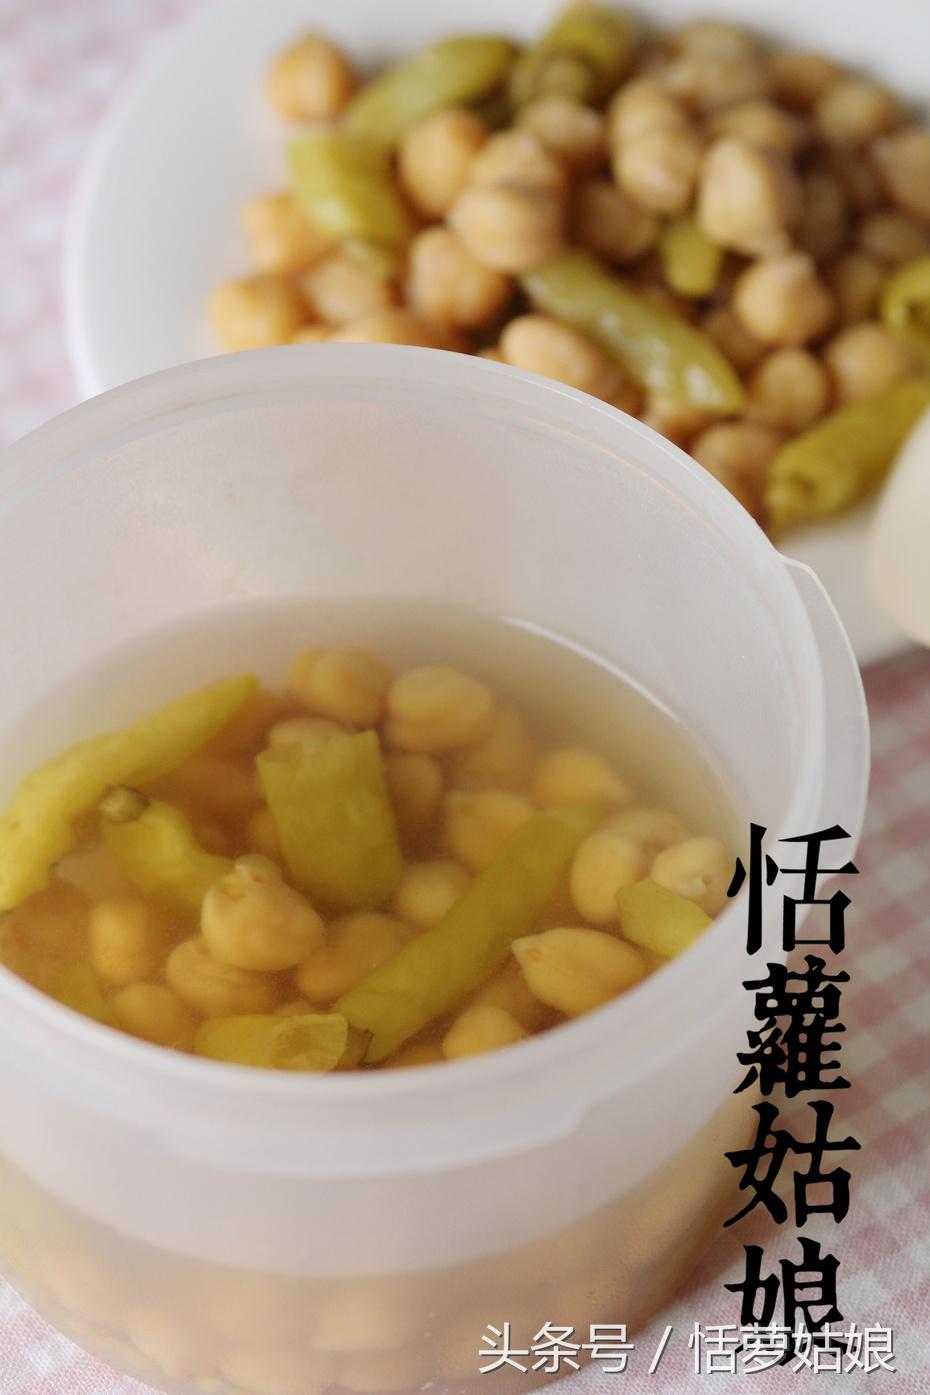 素食者的十全大补丸——泡椒鹰嘴豆